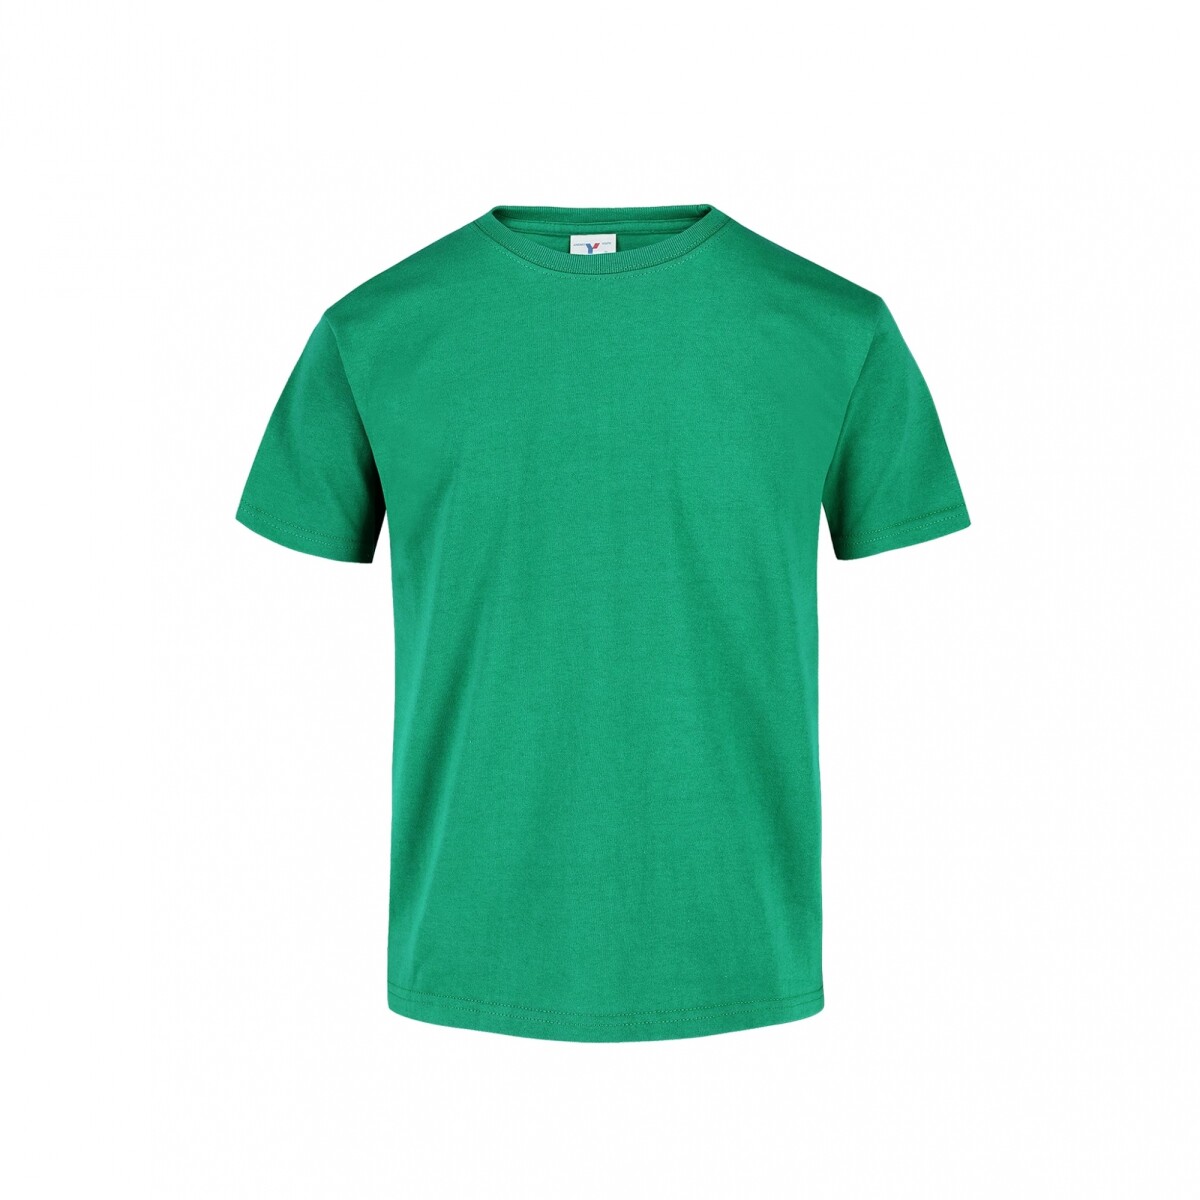 Camiseta a la base joven - Verde jade 